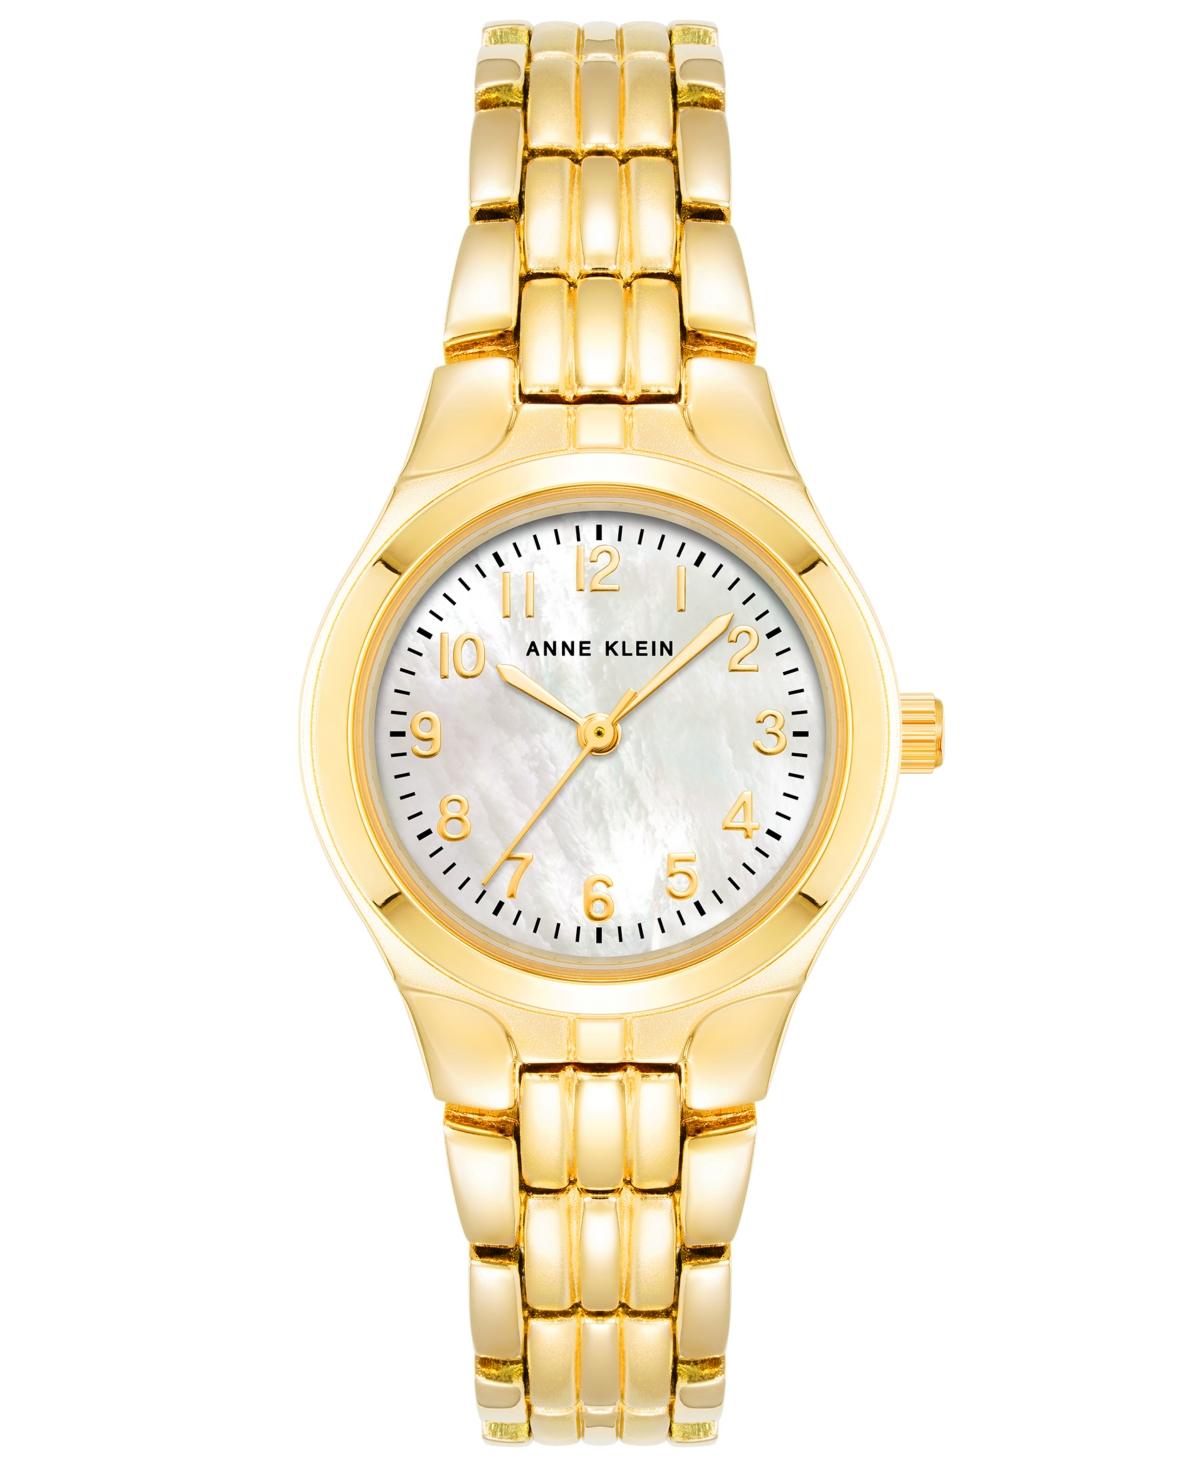 Anne Klein Bracelet Watch, Women's Fashion, Watches & Accessories, Watches  on Carousell